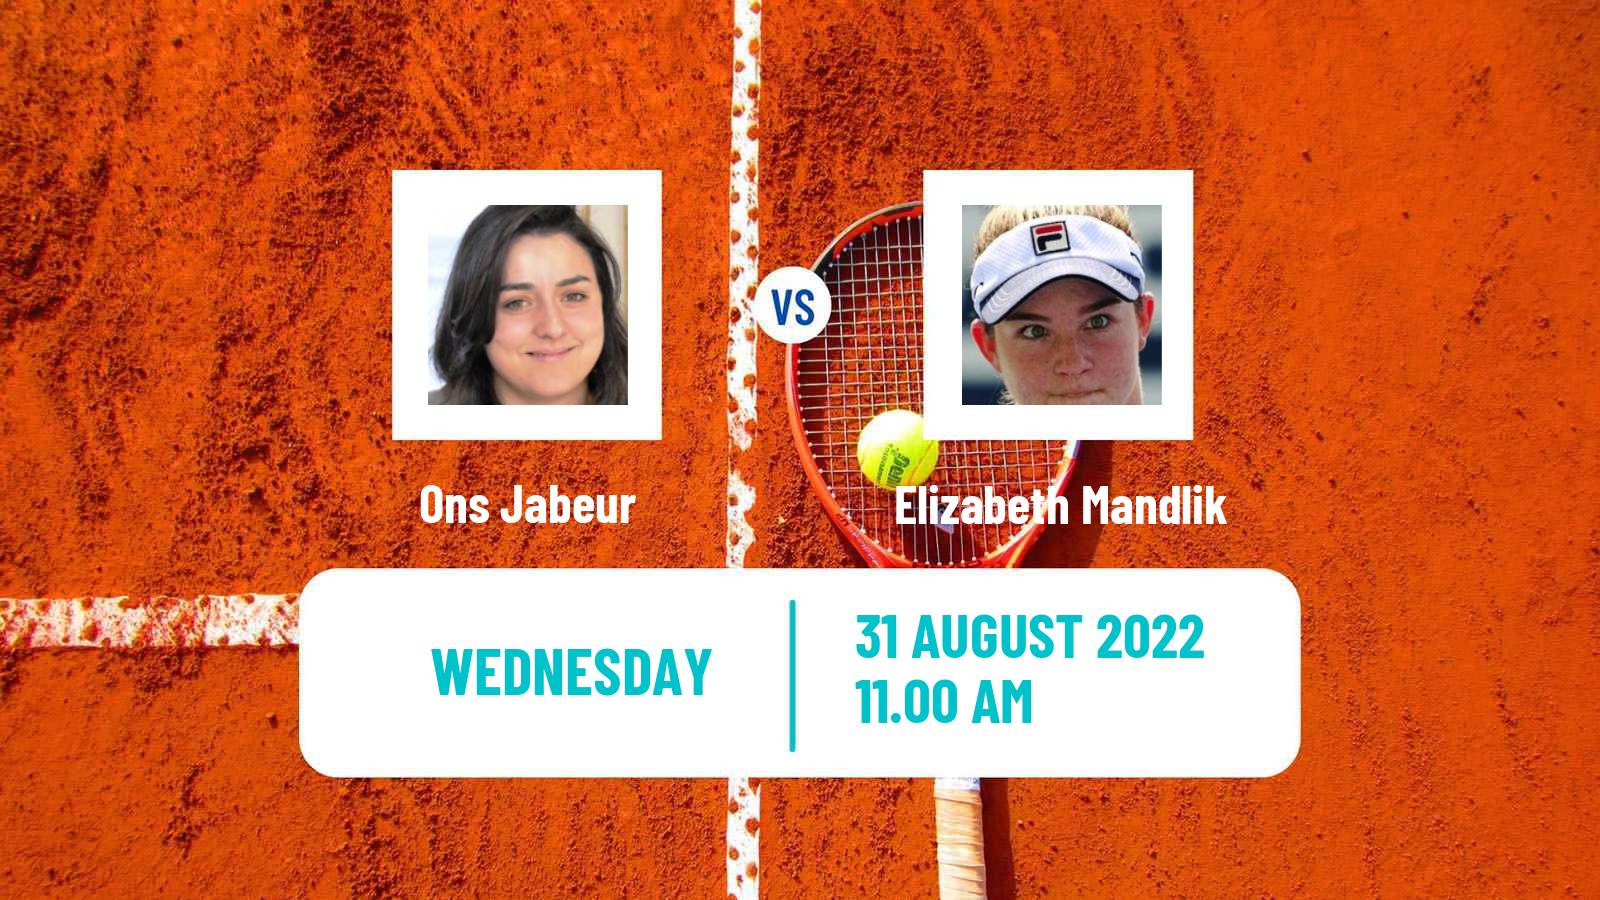 Tennis WTA US Open Ons Jabeur - Elizabeth Mandlik